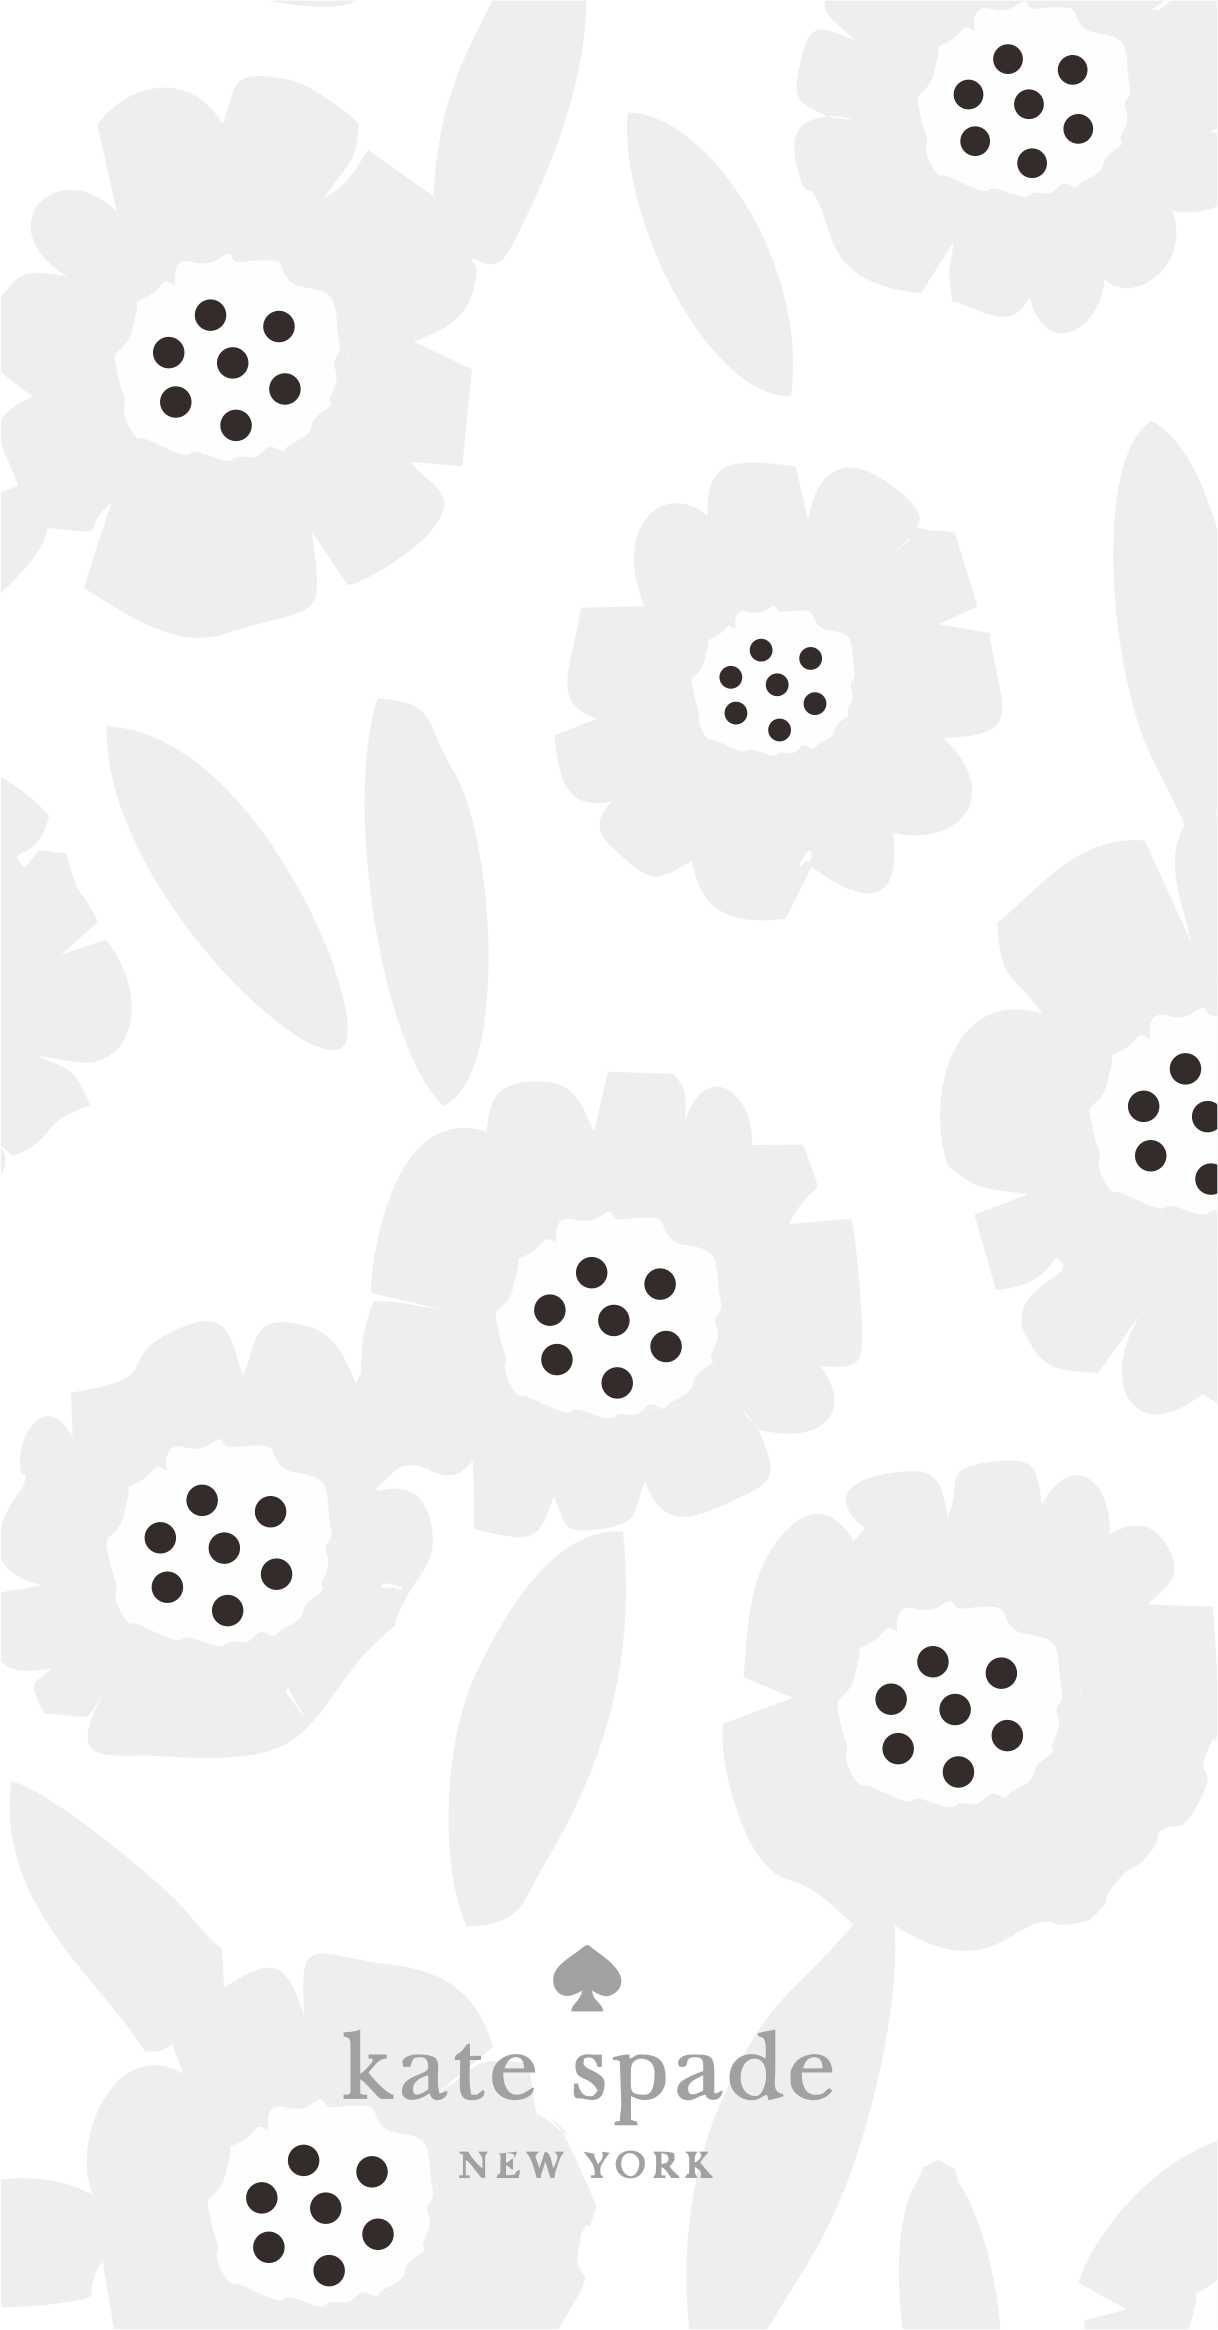 Kate Spade Pattern Design iPhone Wallpaper